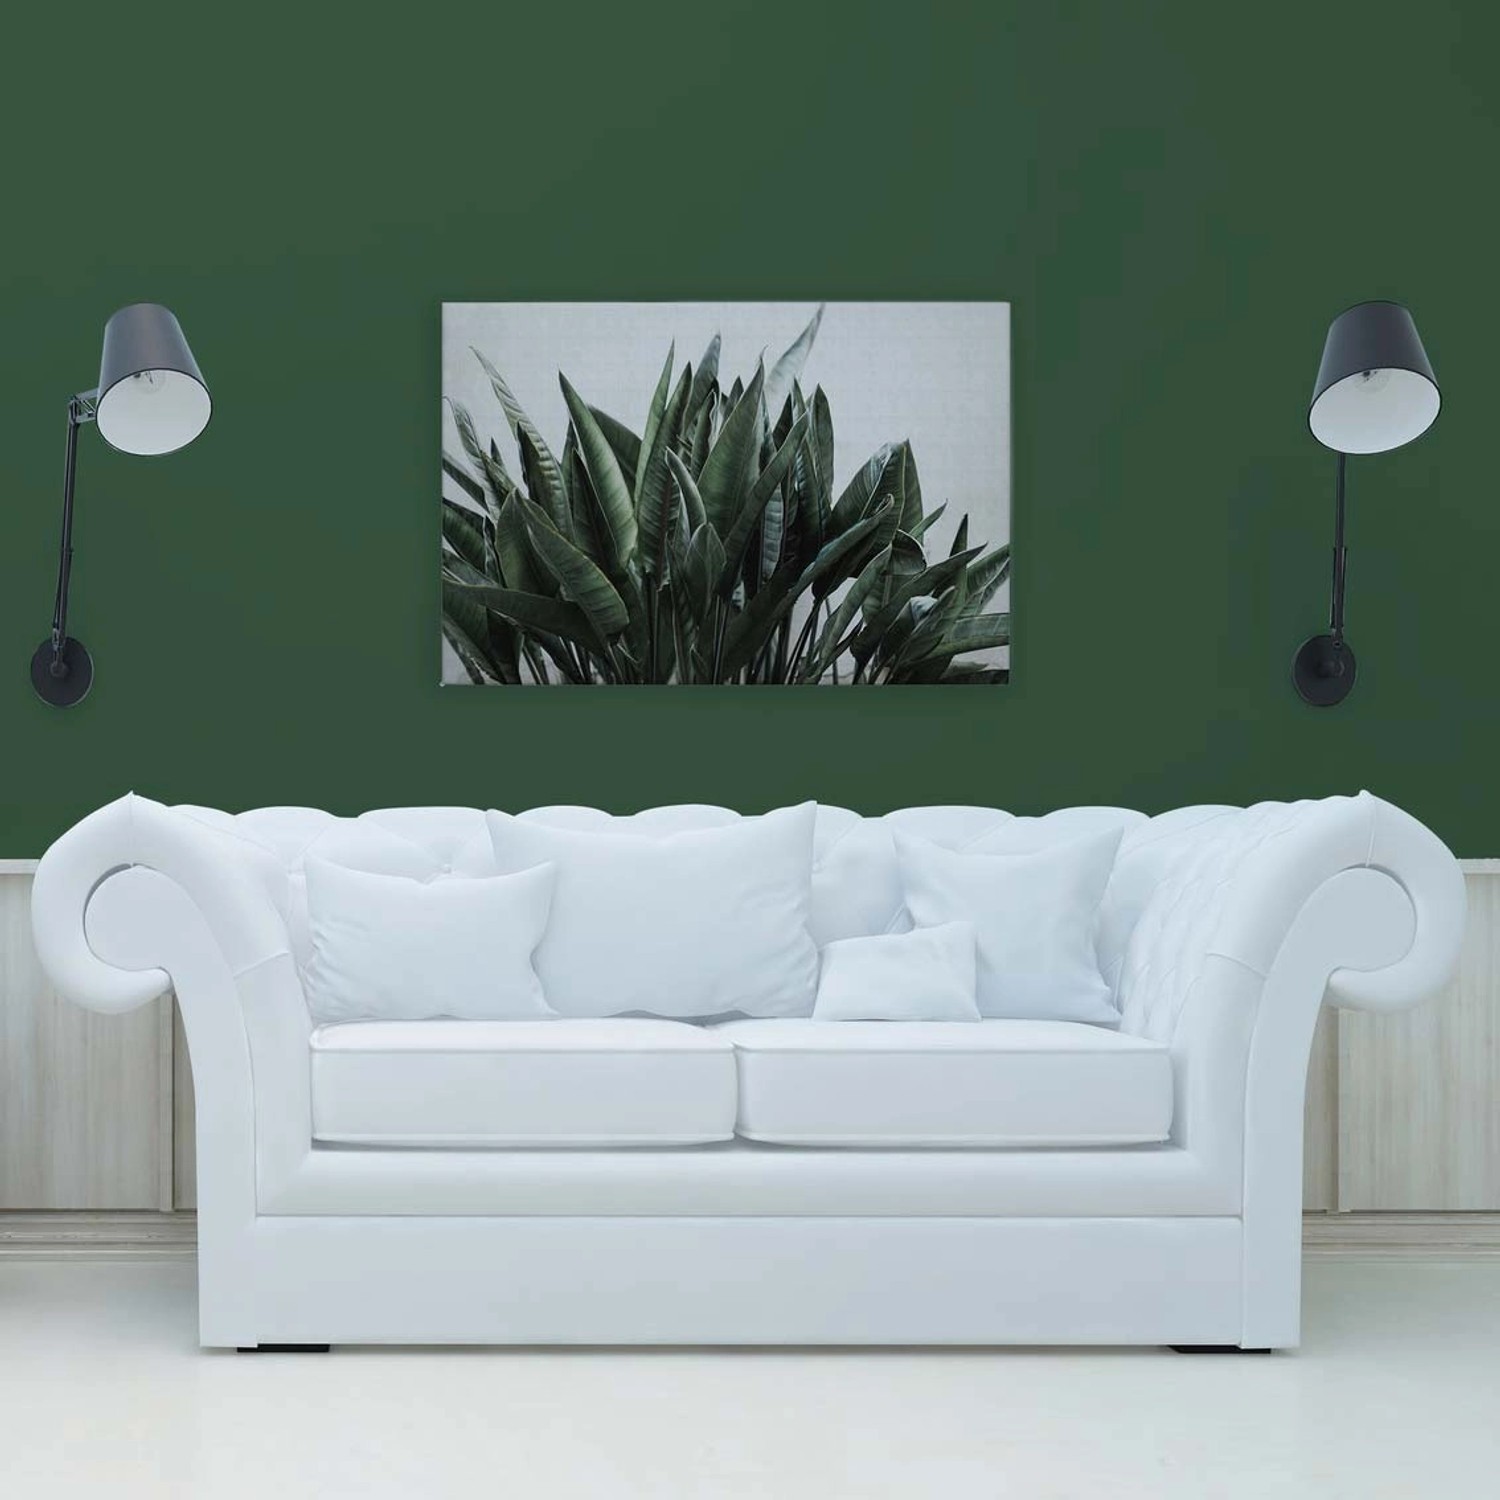 Bricoflor Wandbild Für Wohnzimmer Und Badezimmer Modern Deko Leinwandbild Mit Palmenblättern Grün Weiß Leinwand 90 X 60 